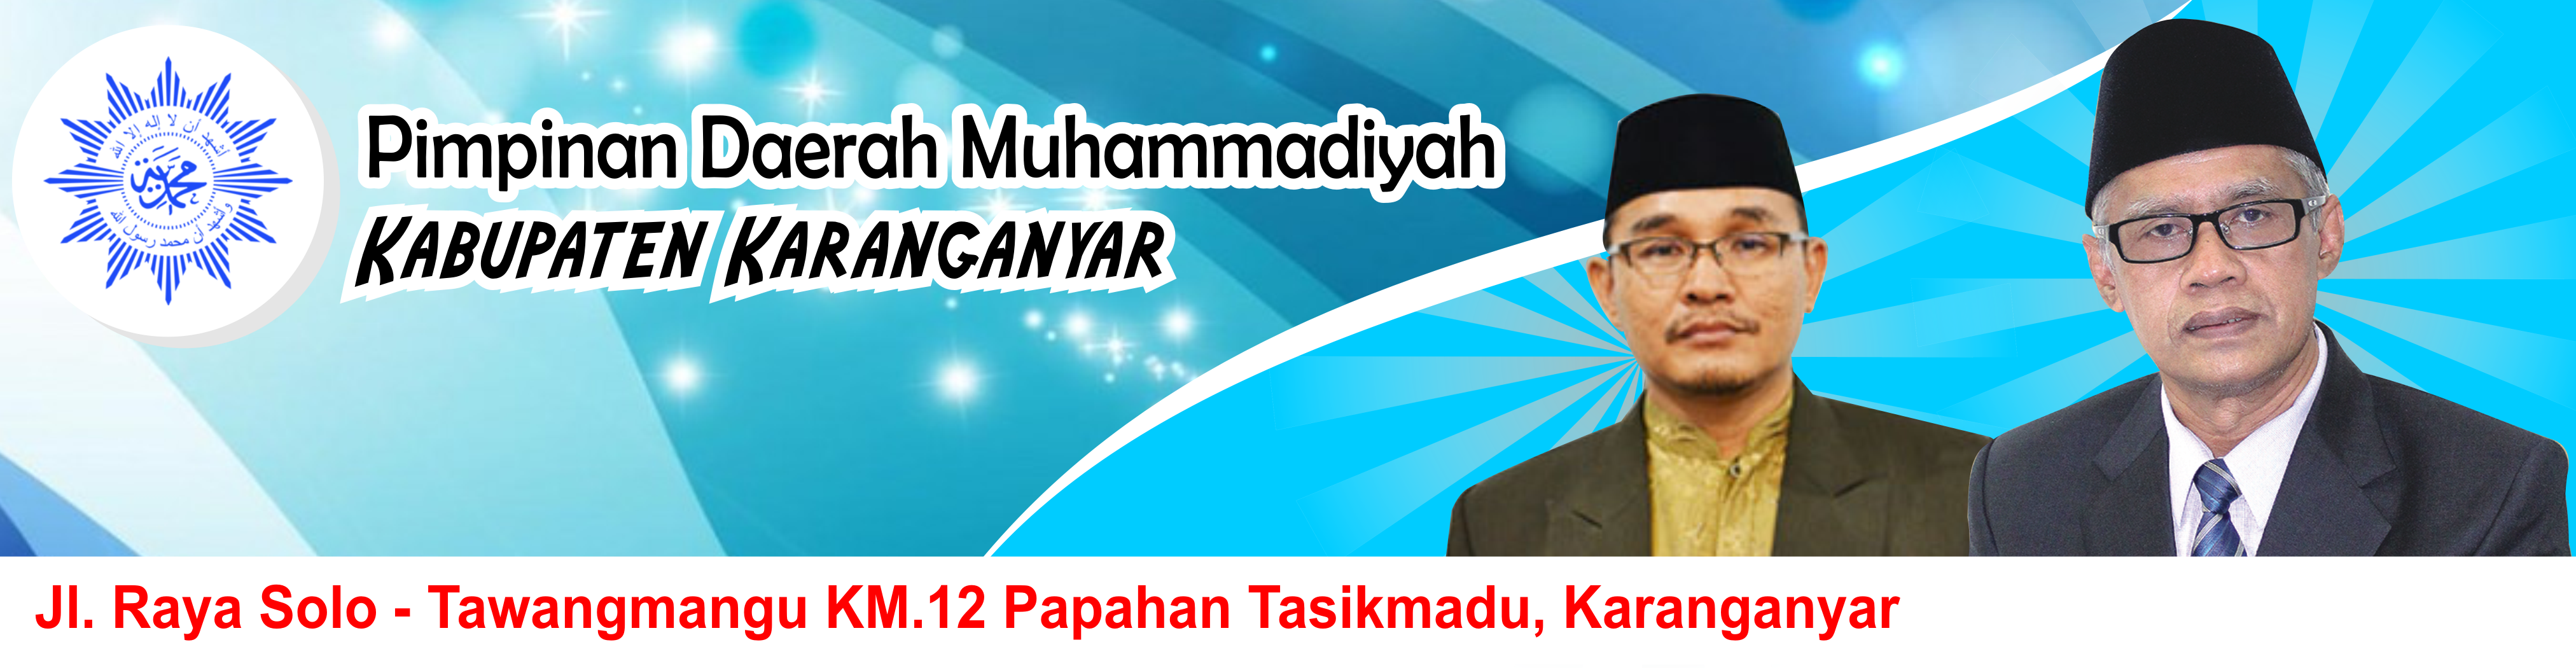 Lembaga Pengawas Pengelolaan Keuangan Pimpinan Daerah Muhammadiyah Kabupaten Karanganyar